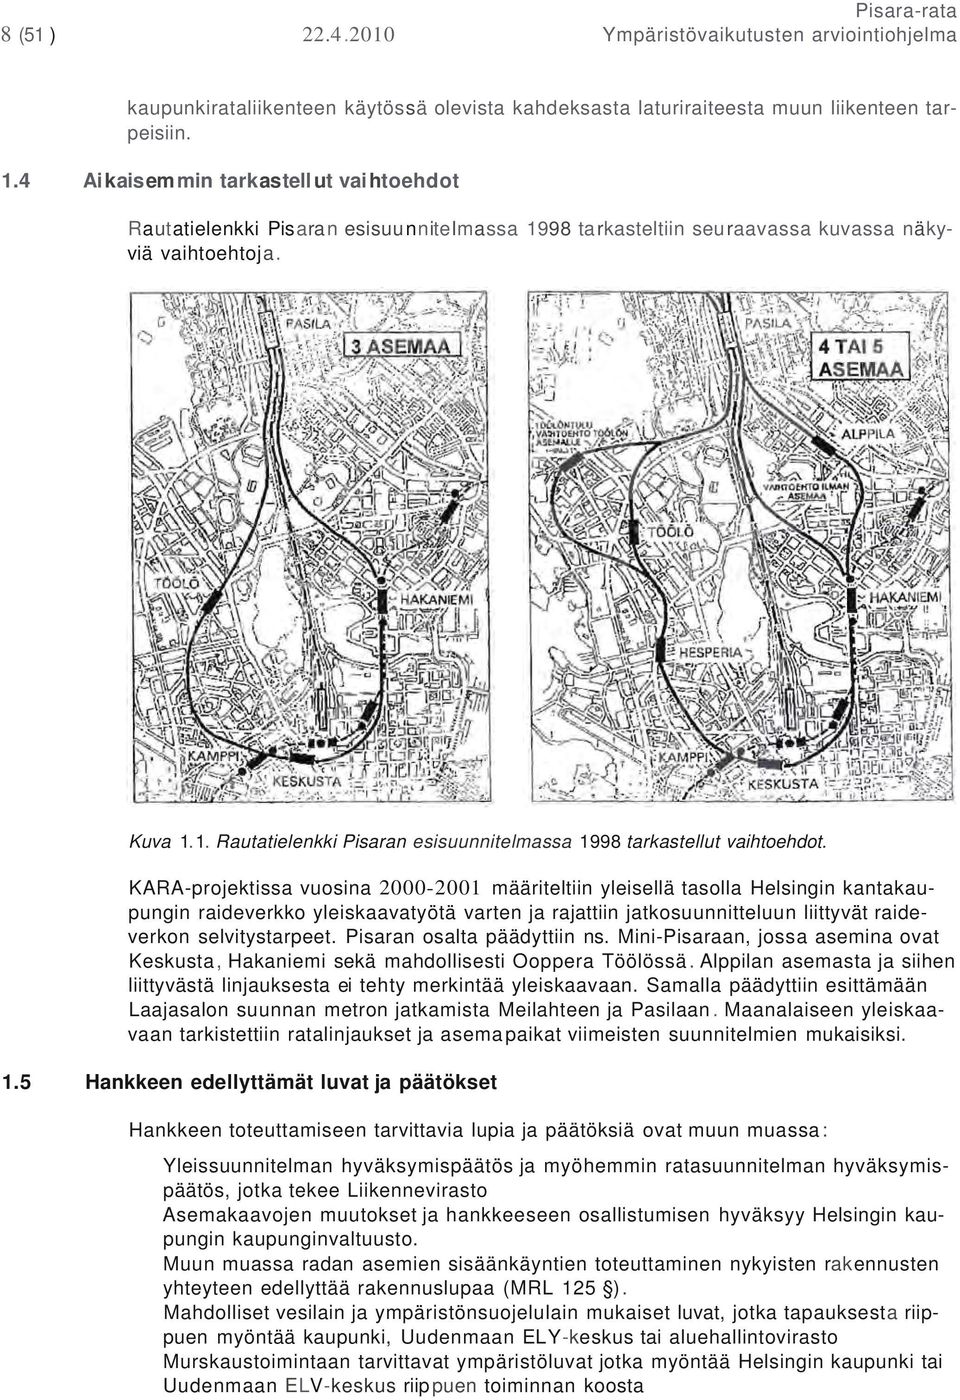 KARA-projektissa vuosina 2000-2001 määriteltiin yleisellä tasolla Helsingin kantakaupungin raideverkko yleiskaavatyötä varten ja rajattiin jatkosuunnitteluun liittyvät raideverkon selvitystarpeet.